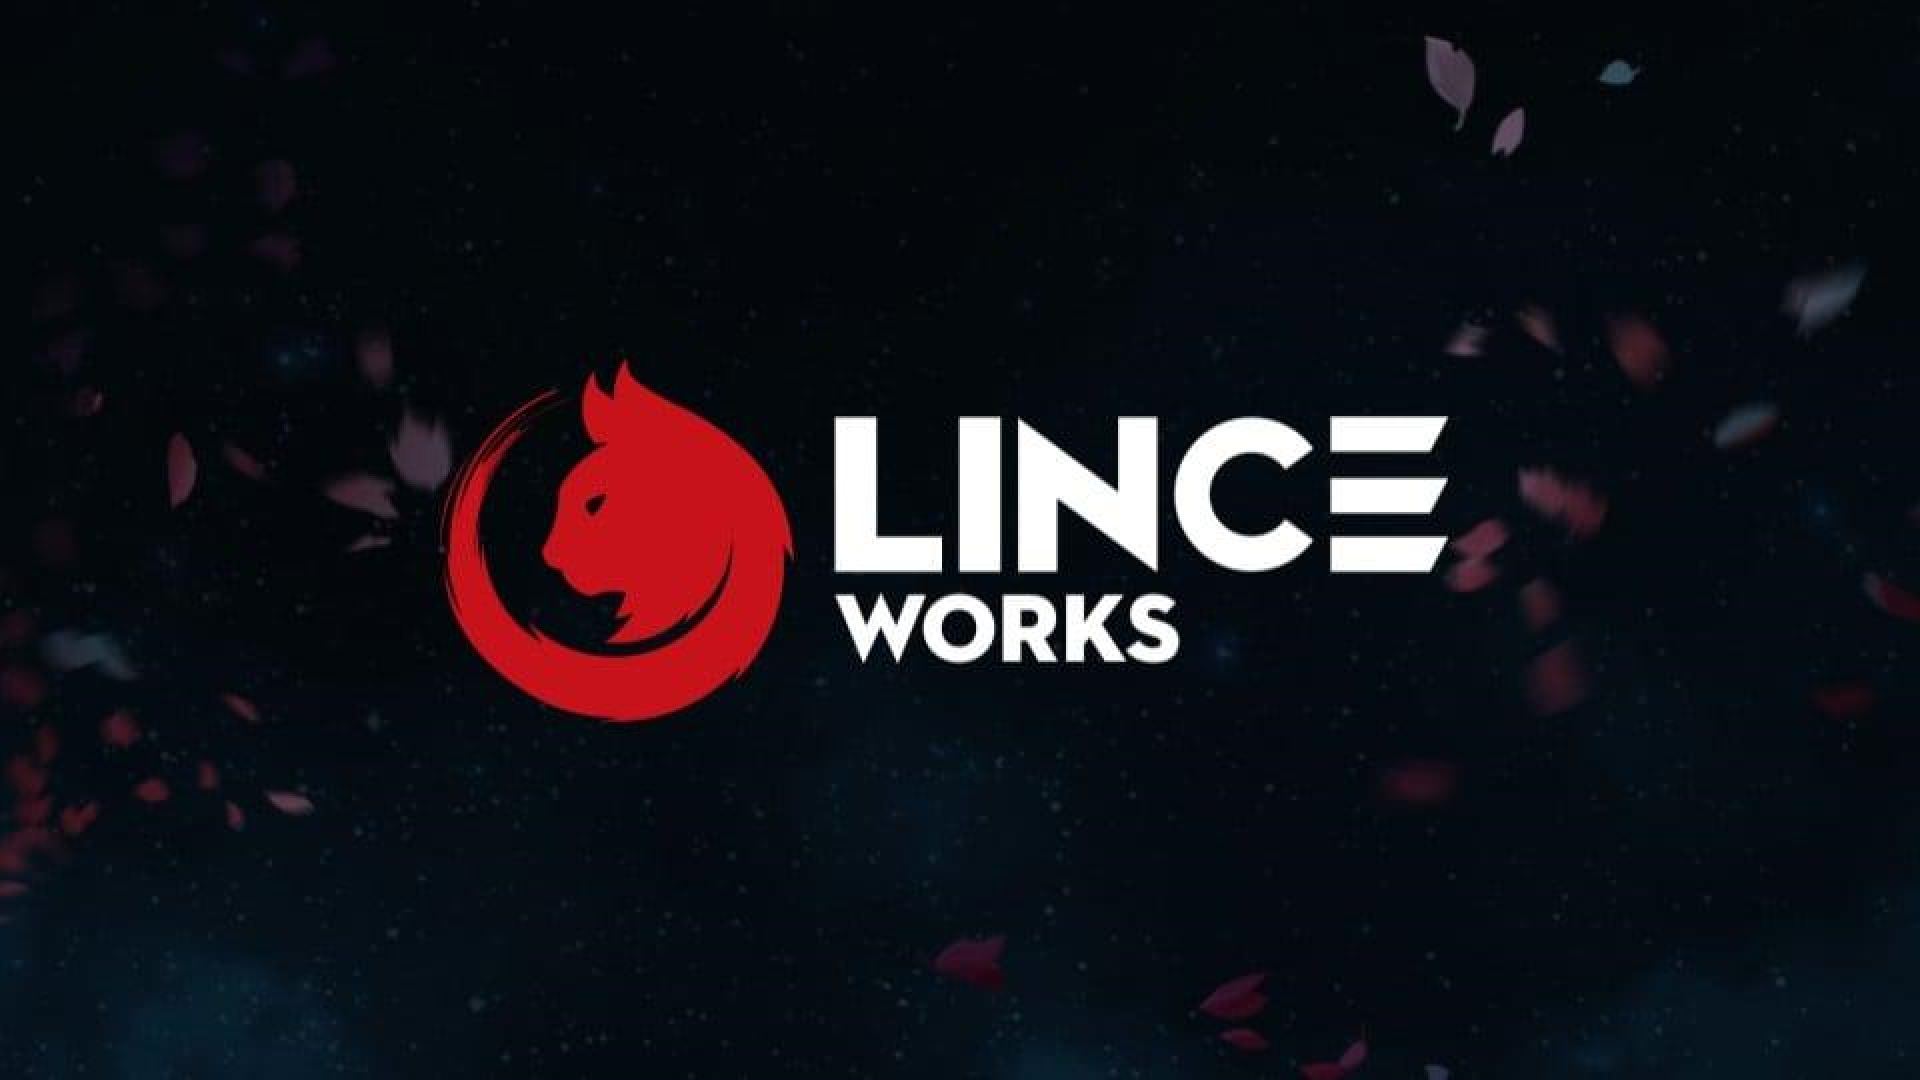 لوگوی استودیو در حال تعطیلی Lince Works